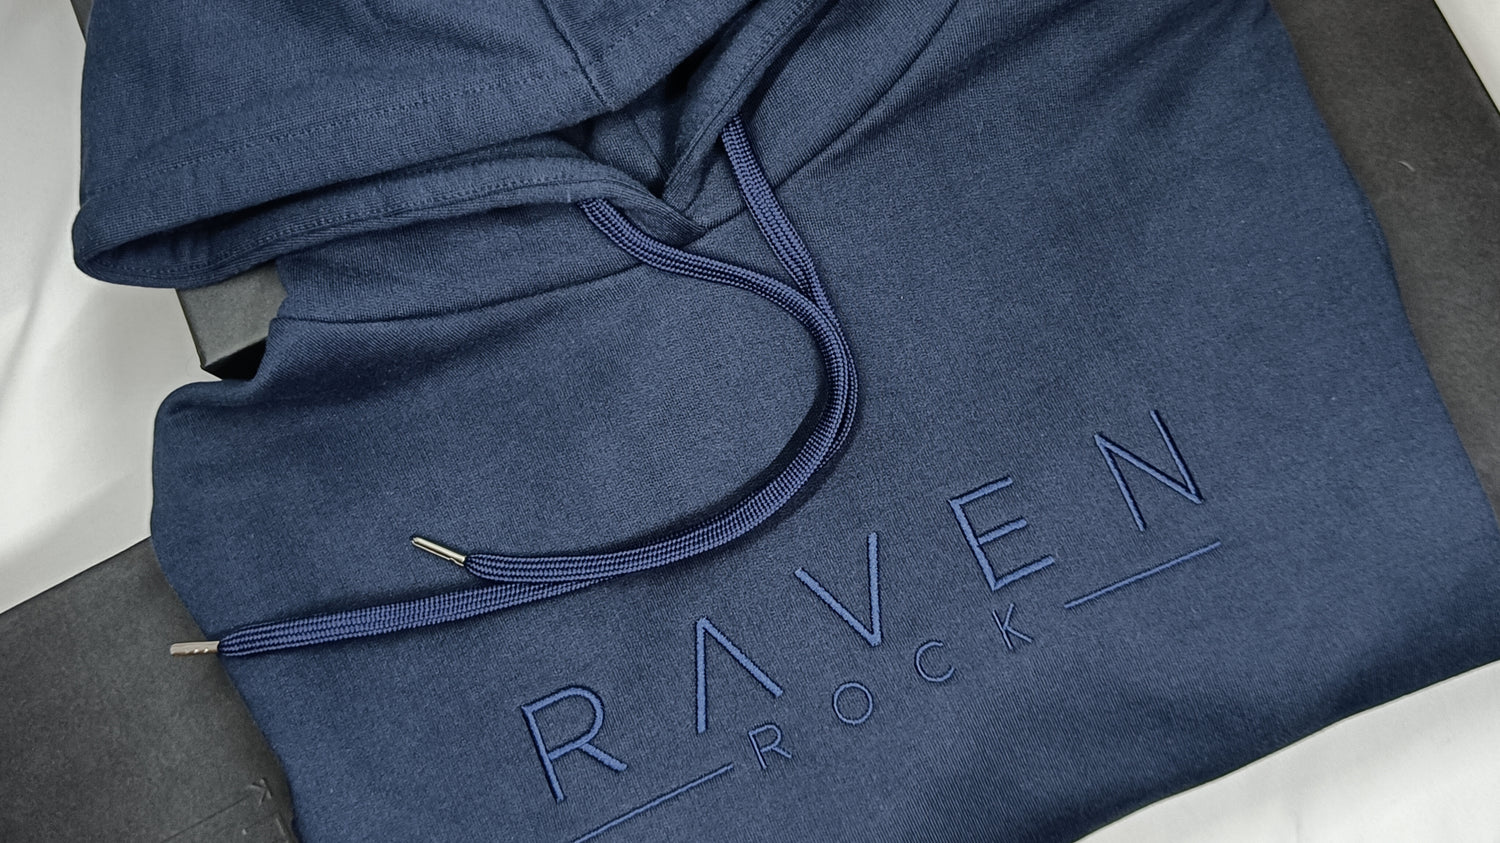 RAVEN ROCK men's hoodie